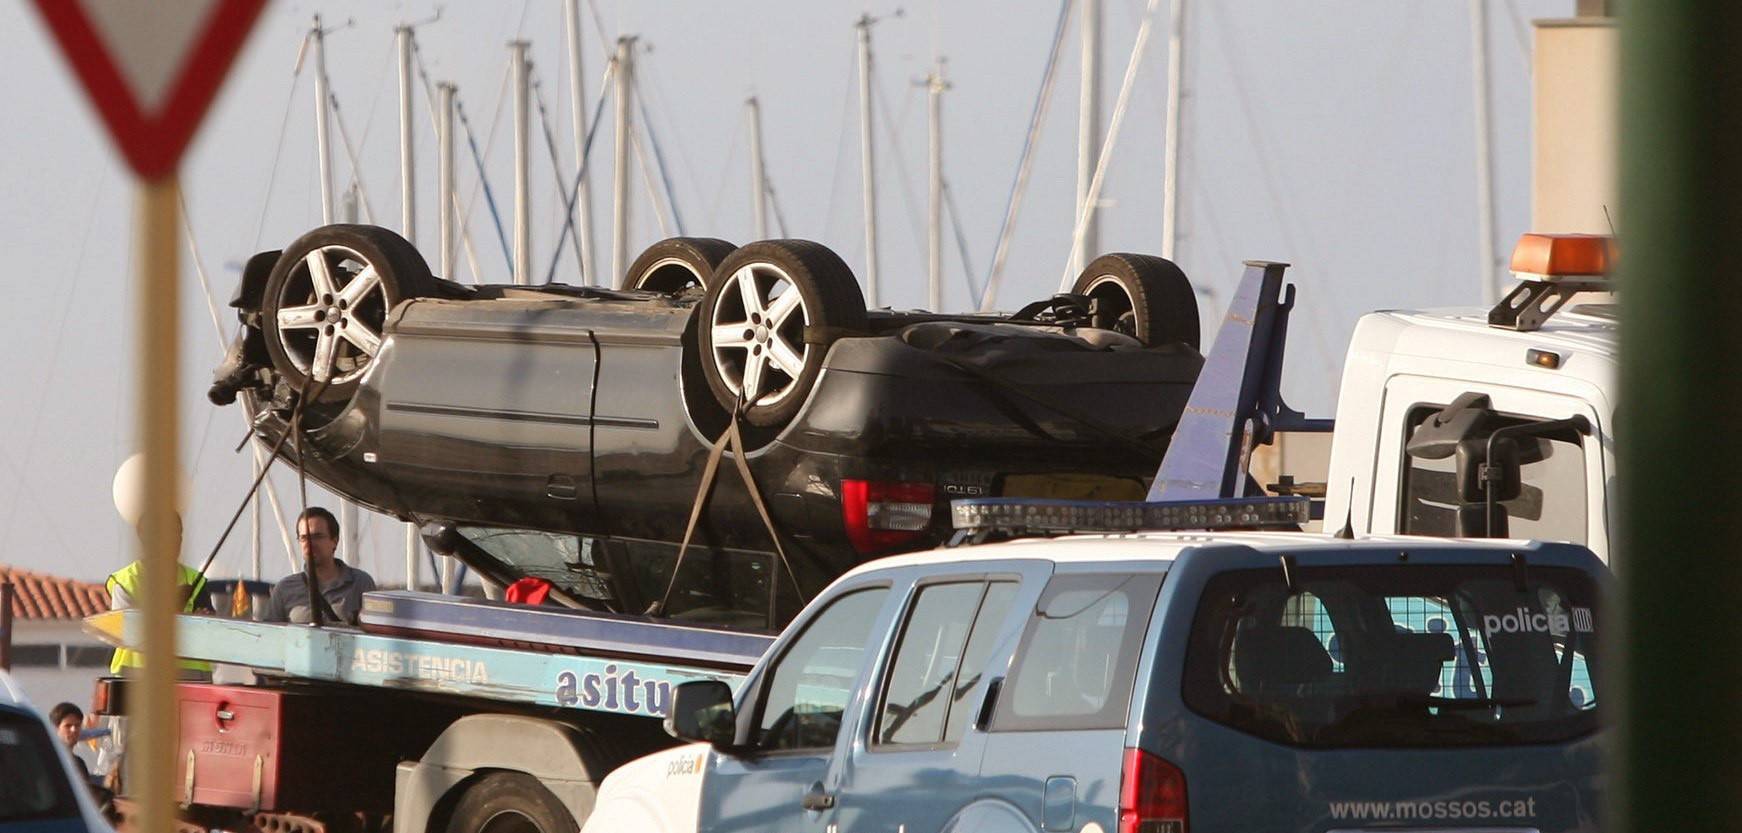 El auto utilizado en el atentado de Cambrils estuvo en Francia unos días antes